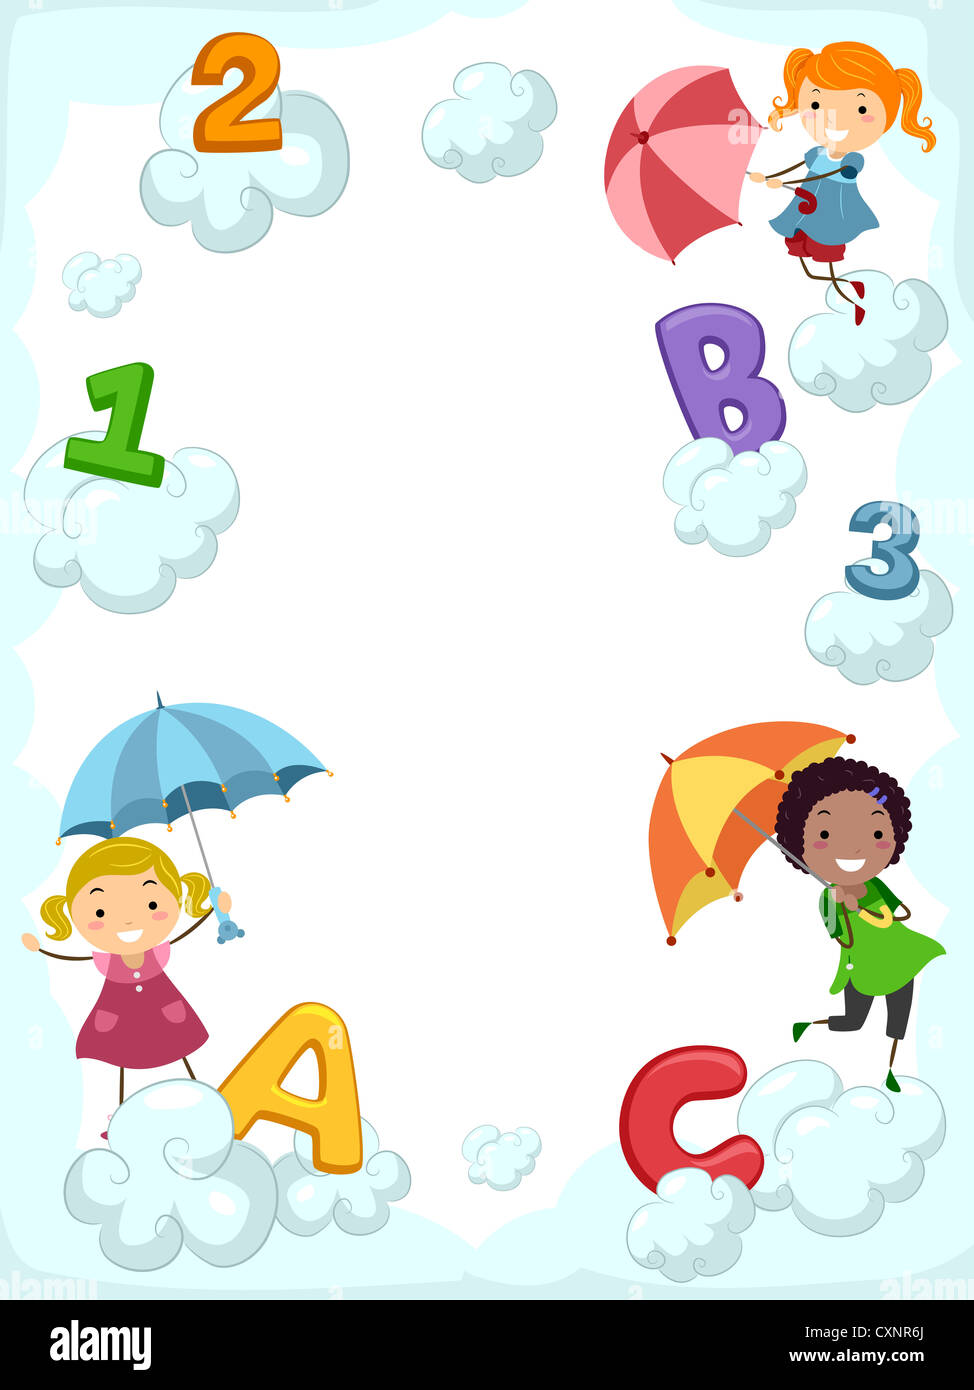 Illustrazione di ragazzi che trasportano gli ombrelli ballare accanto a supporto di nuvole lettere dell'alfabeto Foto Stock